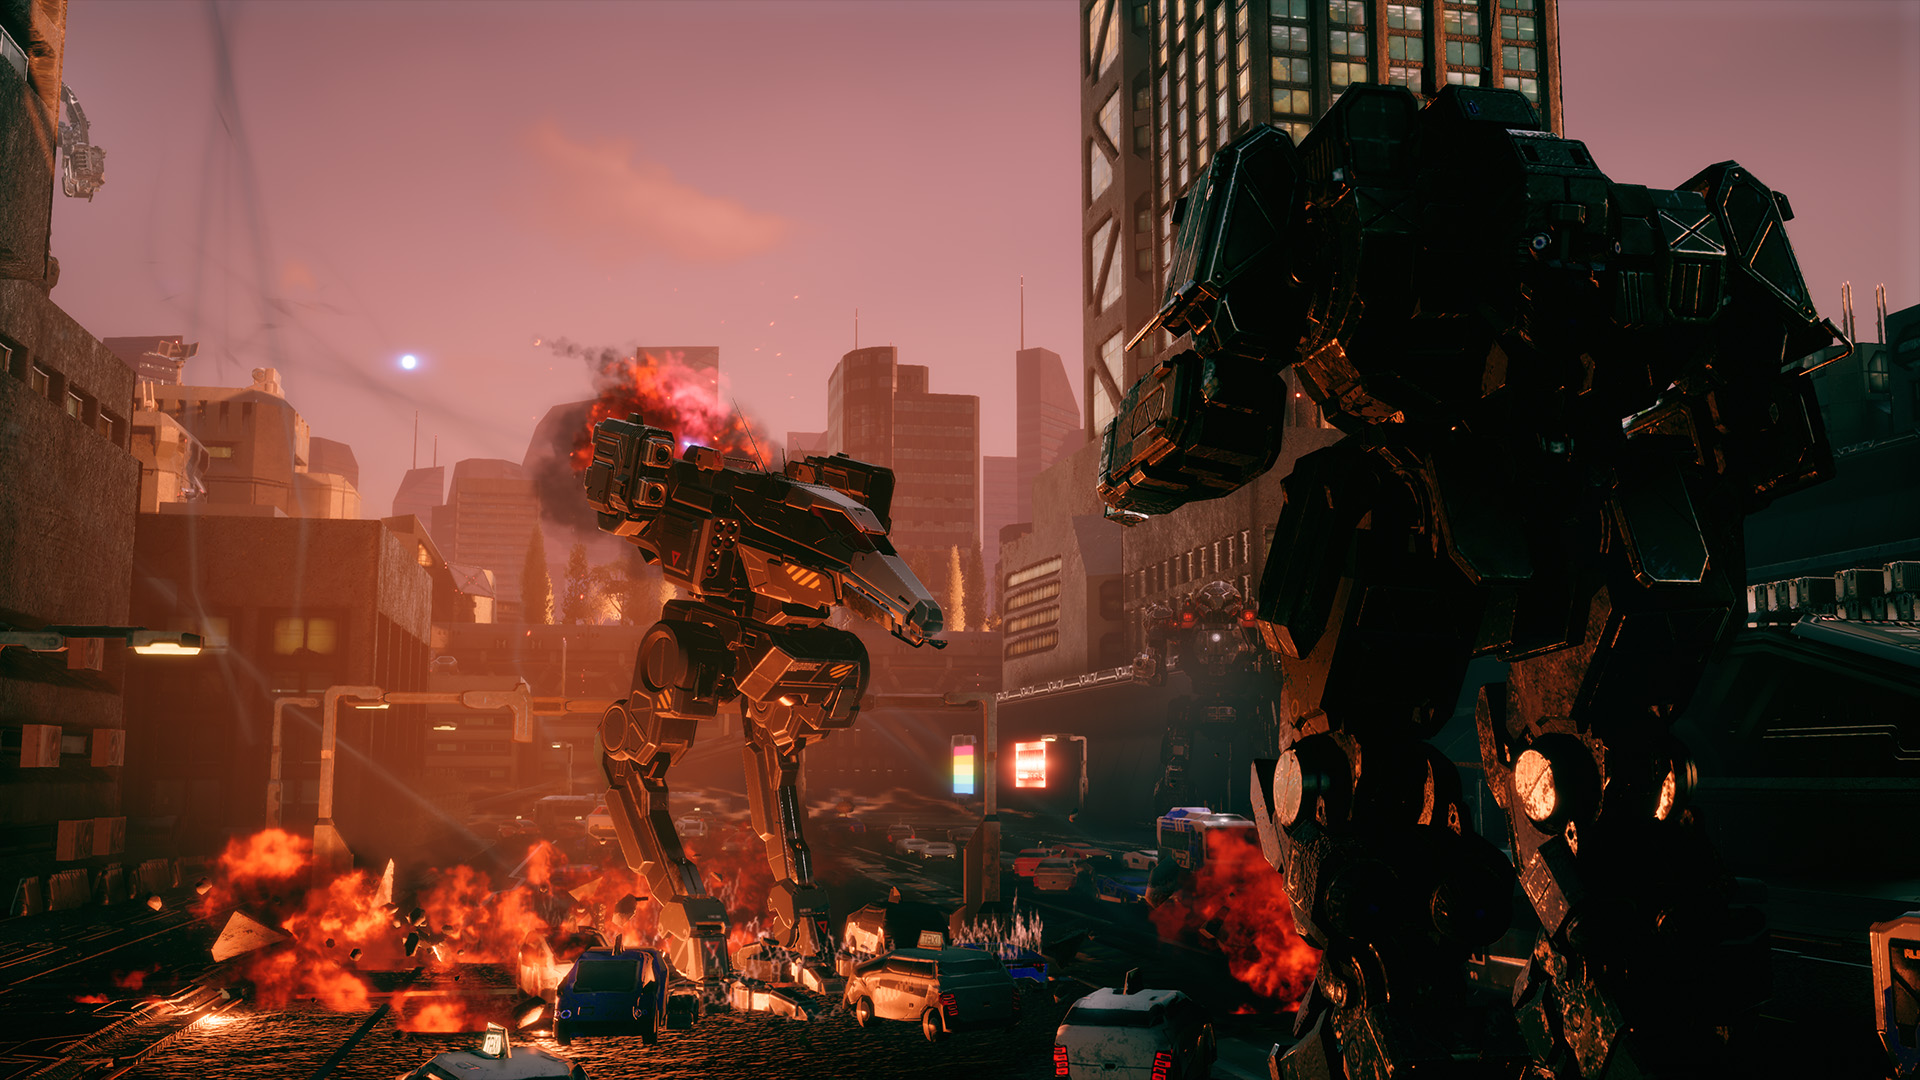 Urban Warfare DLC Announced for BattleTech